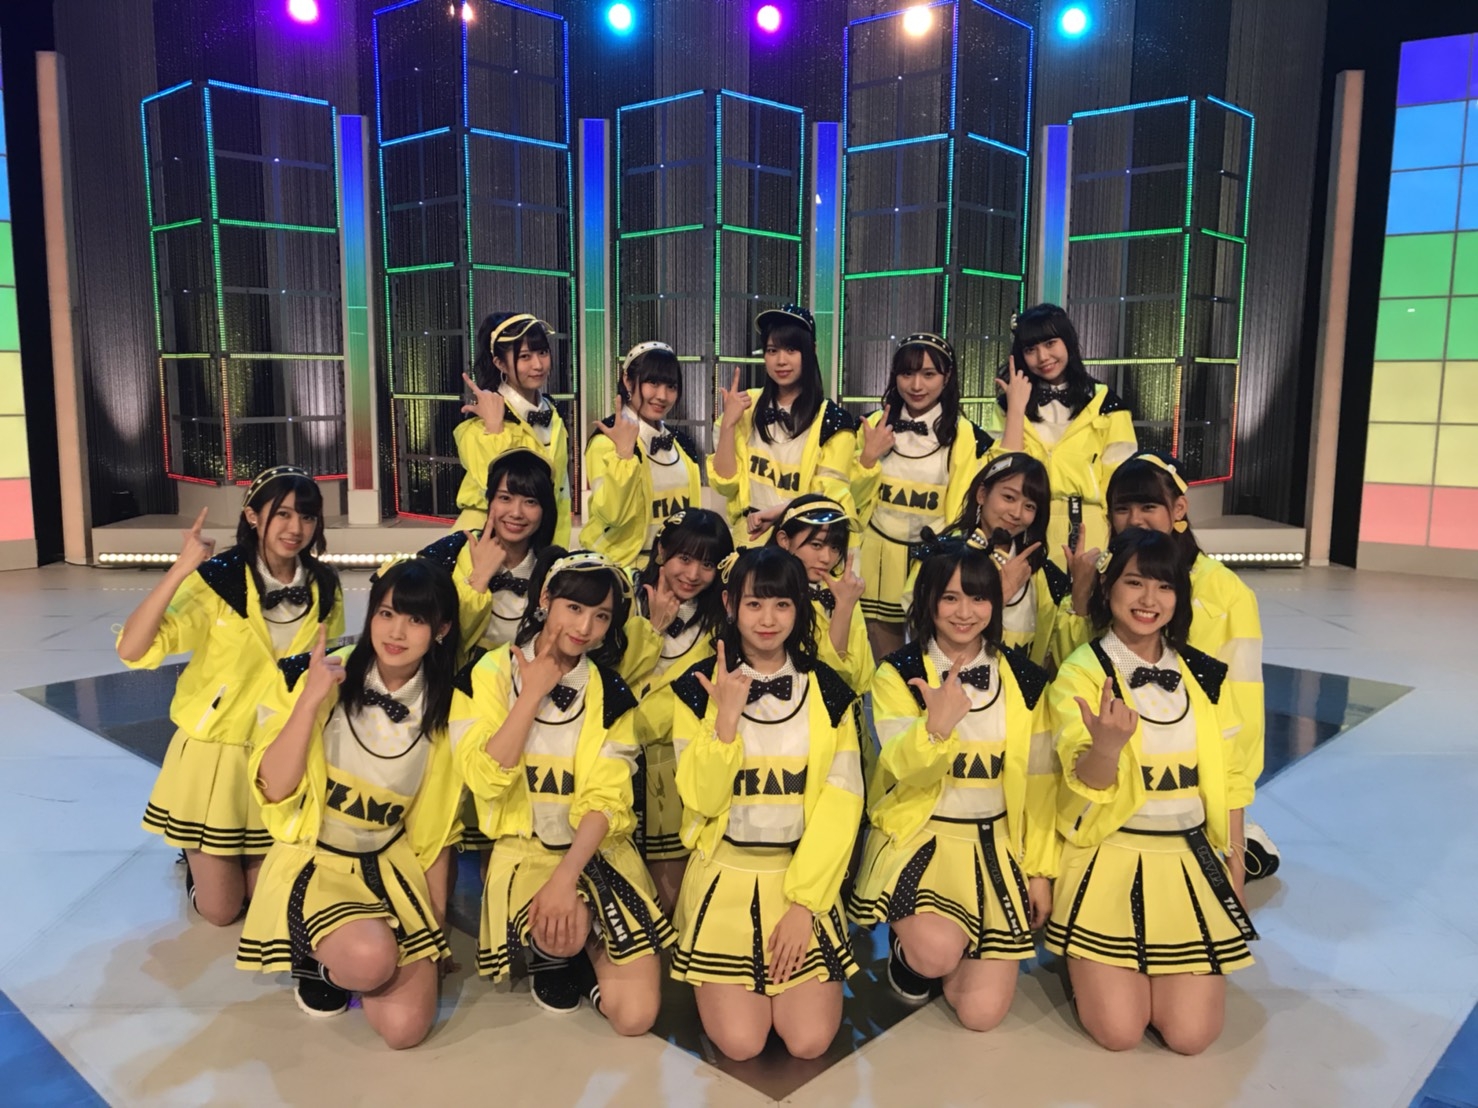 5月日 日 放送 Akb48 Show で 蜂の巣ダンス テレビ初披露 Akb48 Team 8 ニュース レポート Akb48 Team 8公式サイト